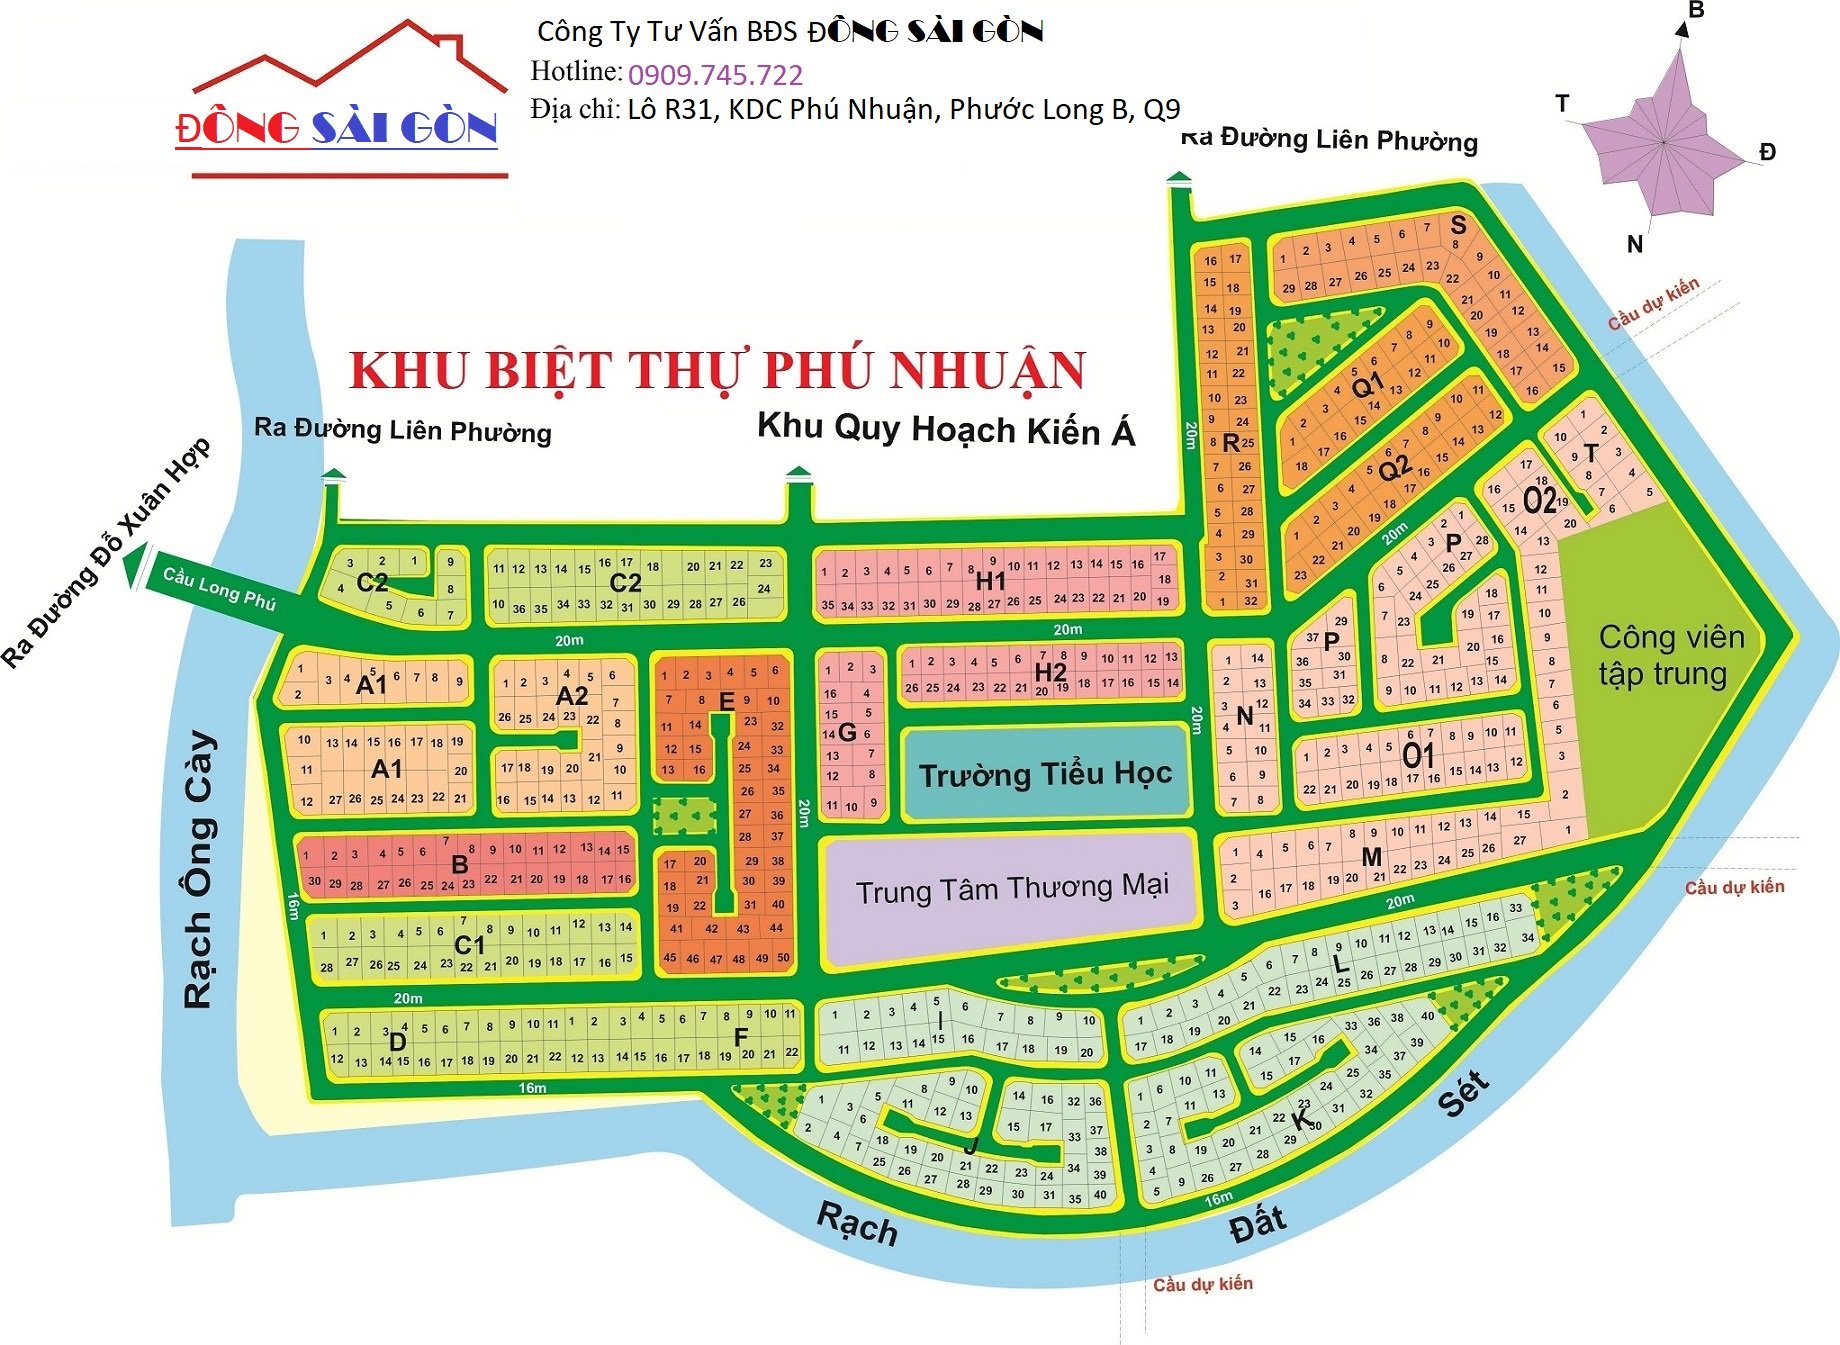 Cần bán Đất dự án KDC Phú Nhuận - Phước Long B, Diện tích 294m², Giá 81 Triệu/m²